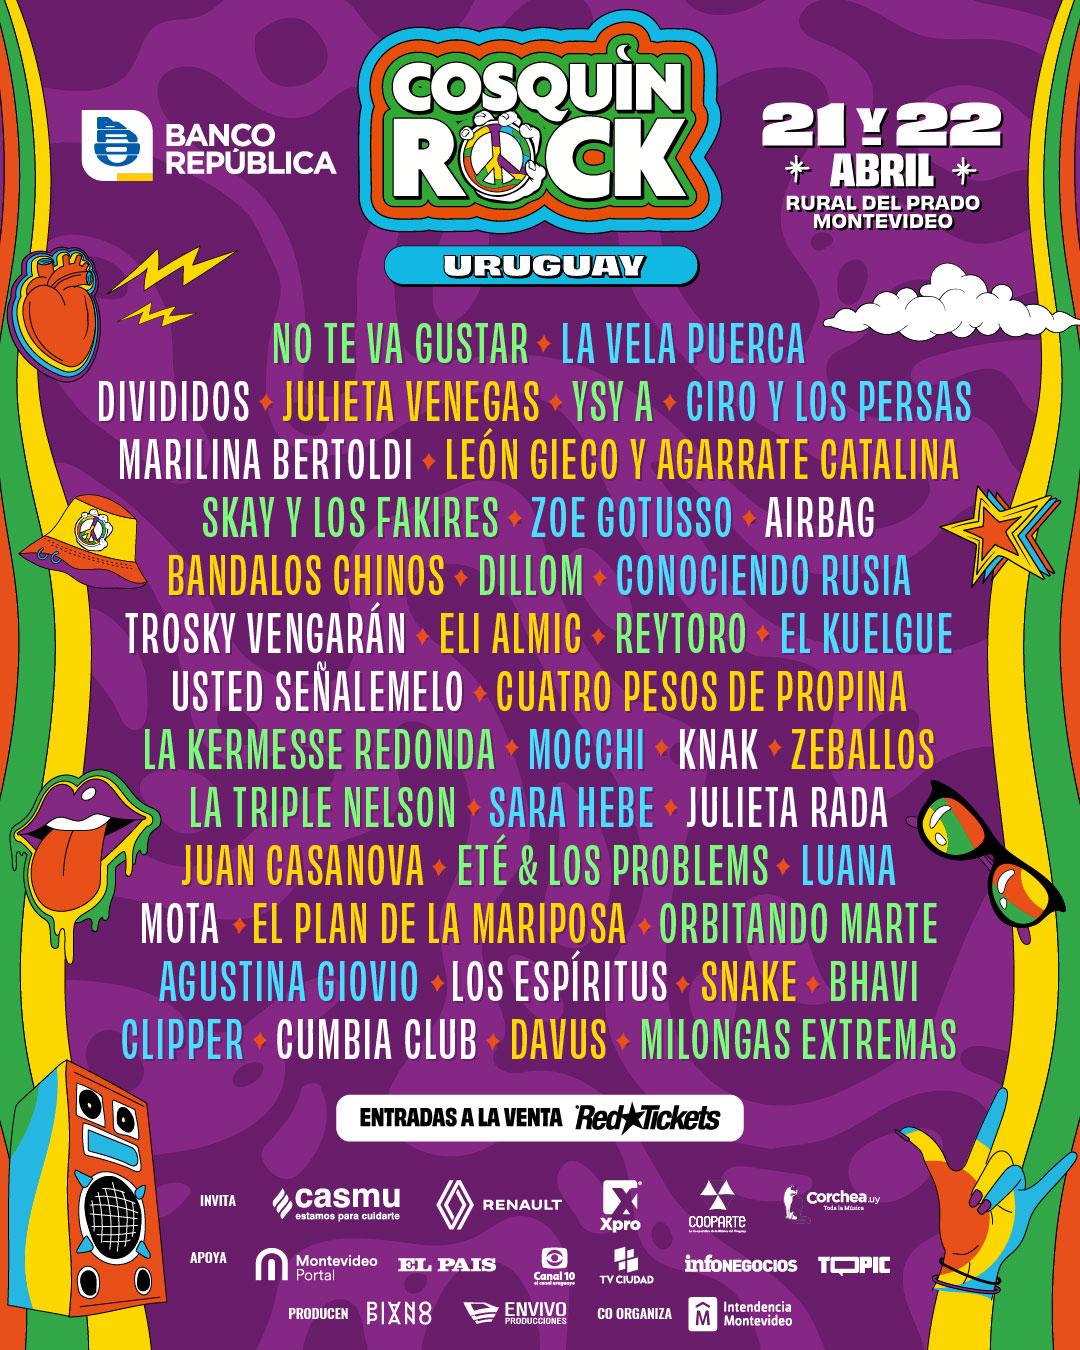 Conocé los precios de las entradas y la grilla que tendrá el Cosquín Rock Uruguay!